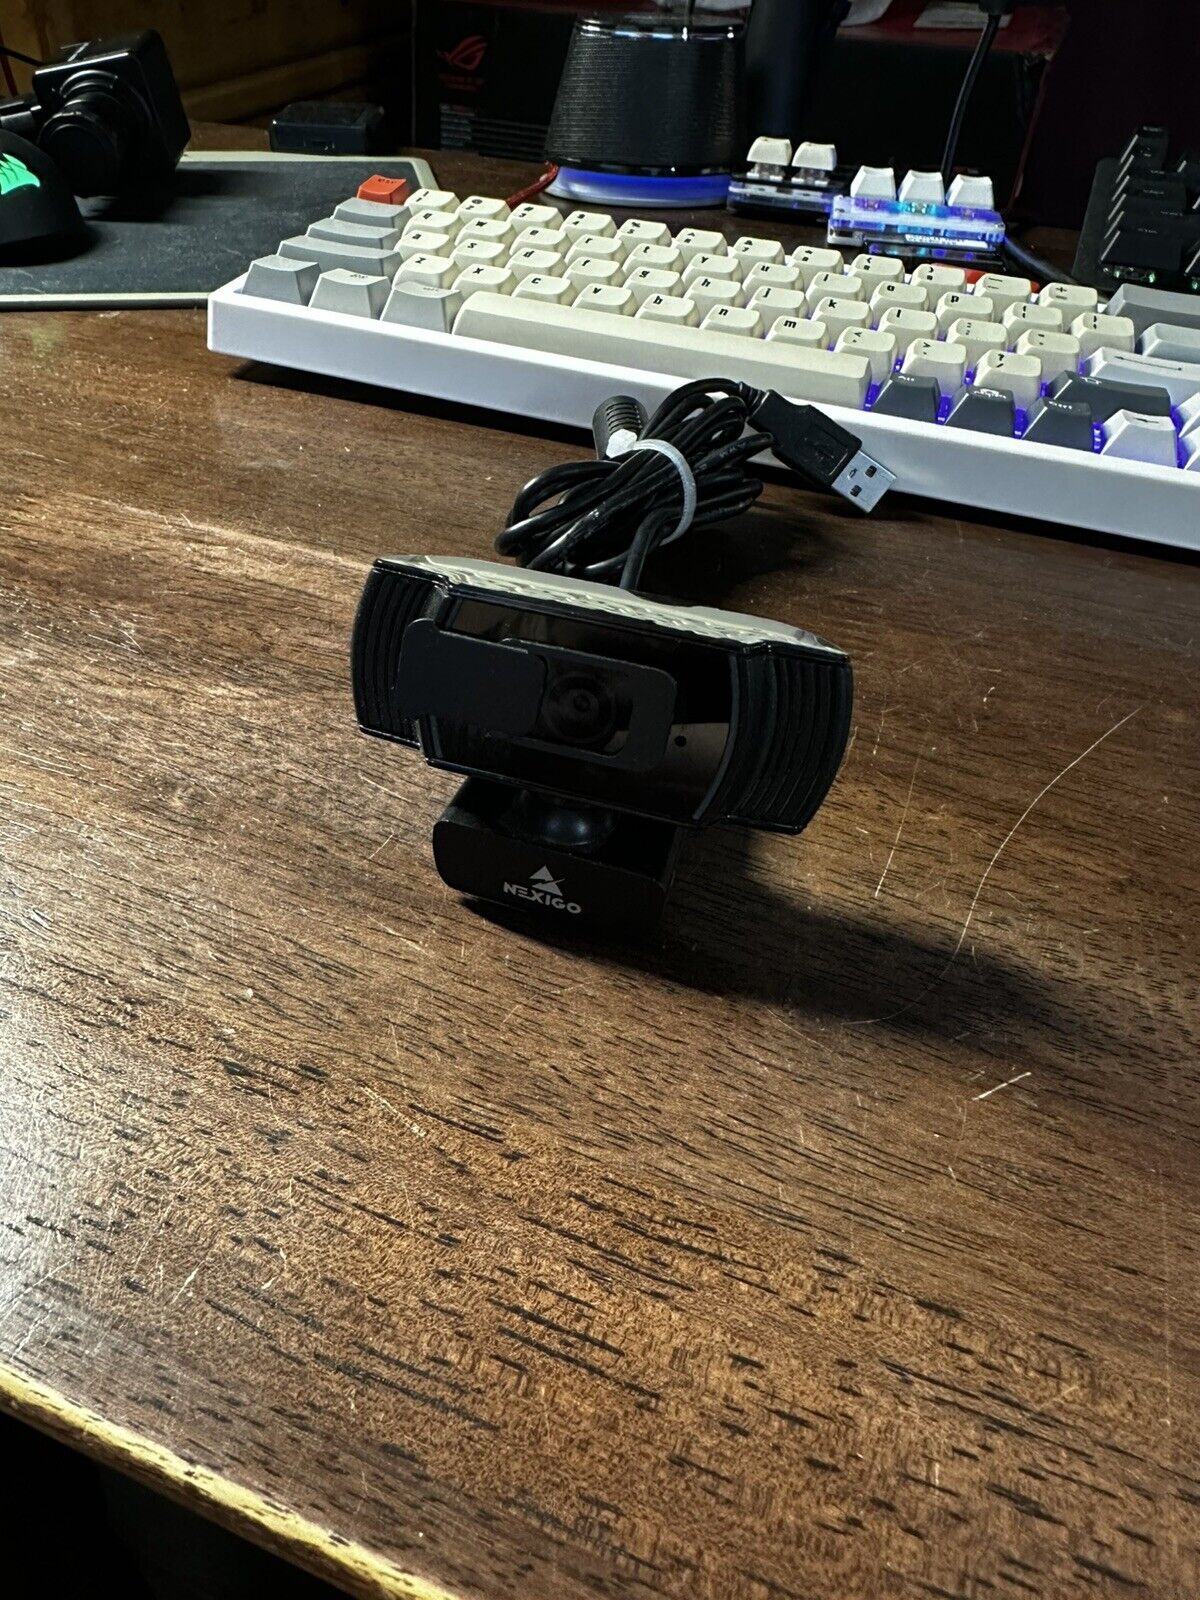 NexiGo N930AF - 1080P 30FPS Webcam